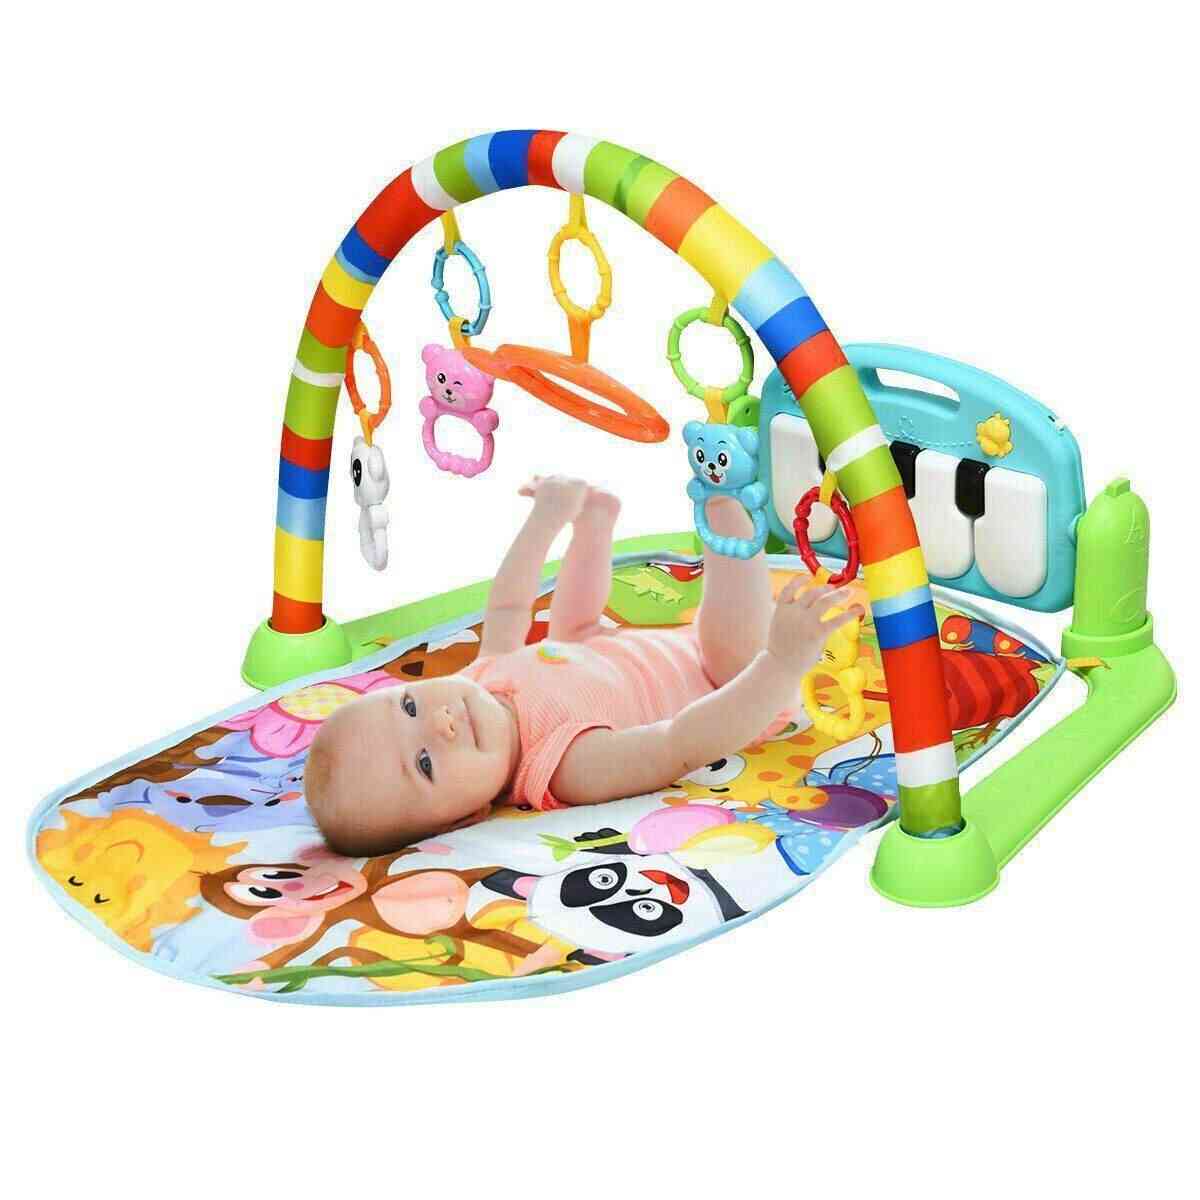 Baby gym speelkleed 0-12 maanden ontwikkelen tapijt, zachte rammelaars muzikaal speelgoed voor baby's games - a